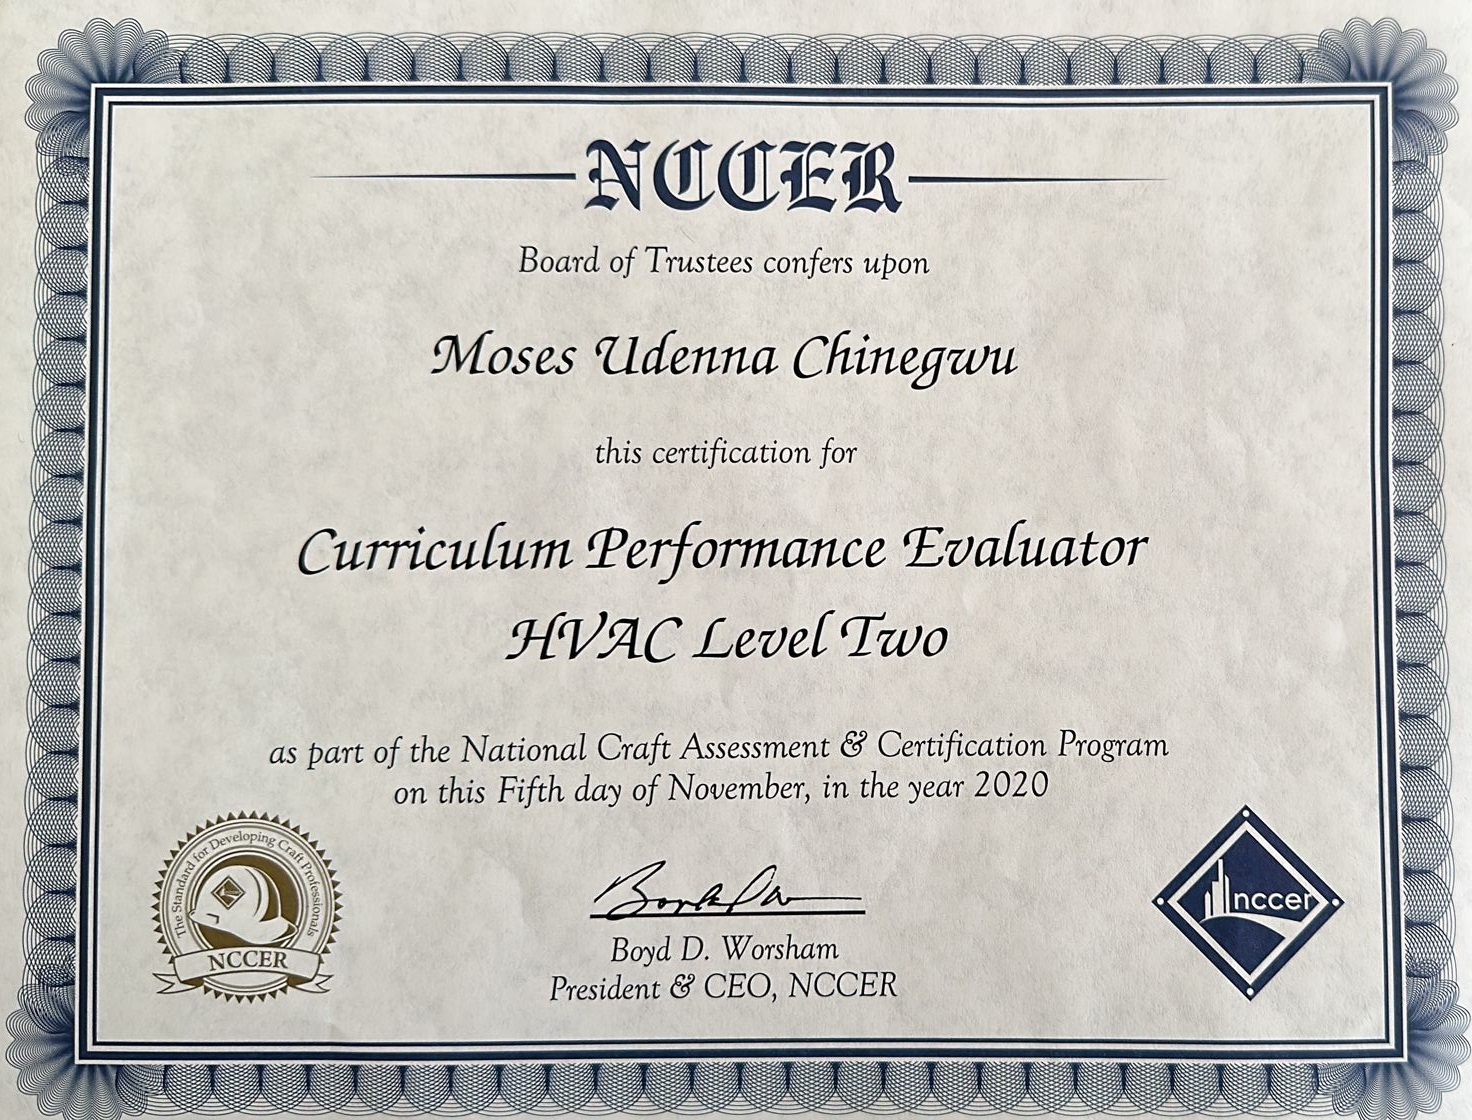 Curriculum Performance Evaluator: HVAC Level 02